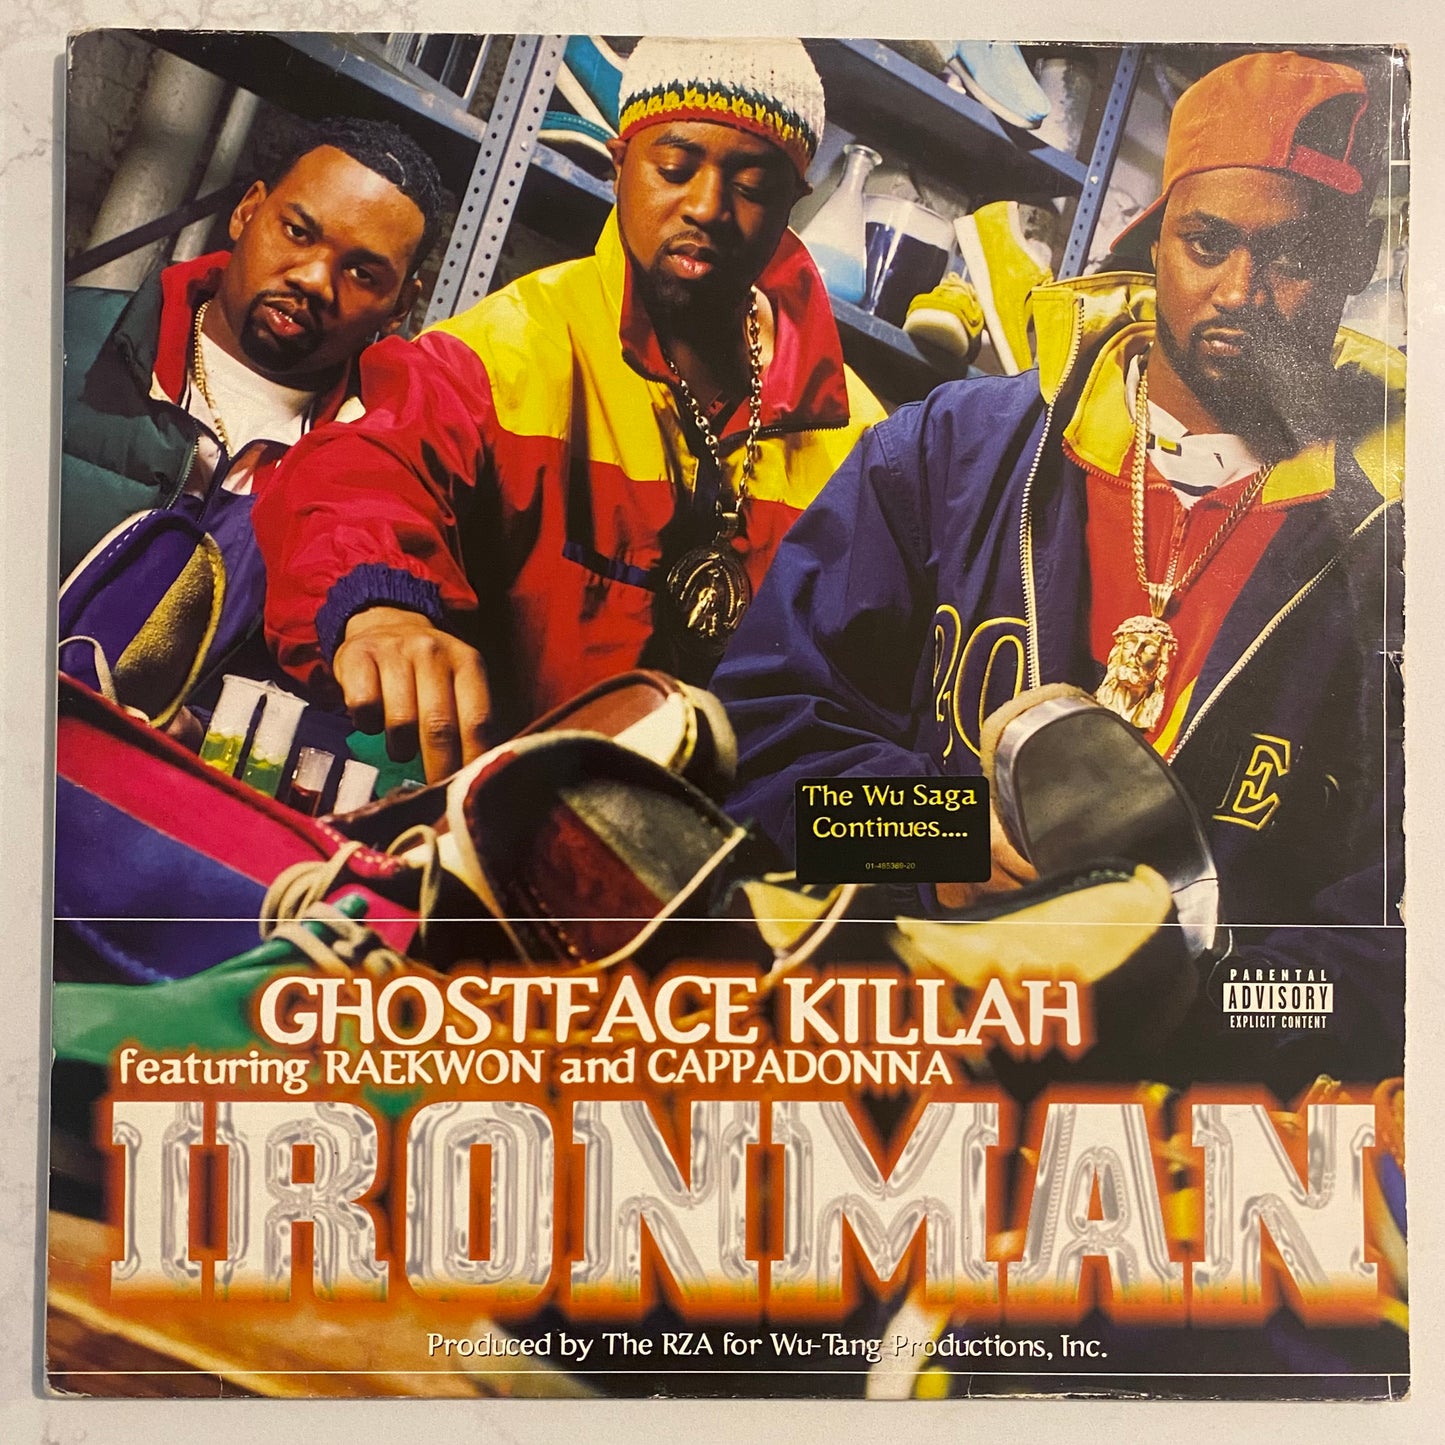 Ghostface Killah - Ironman (2xLP, Album, Gat). HIP-HOP